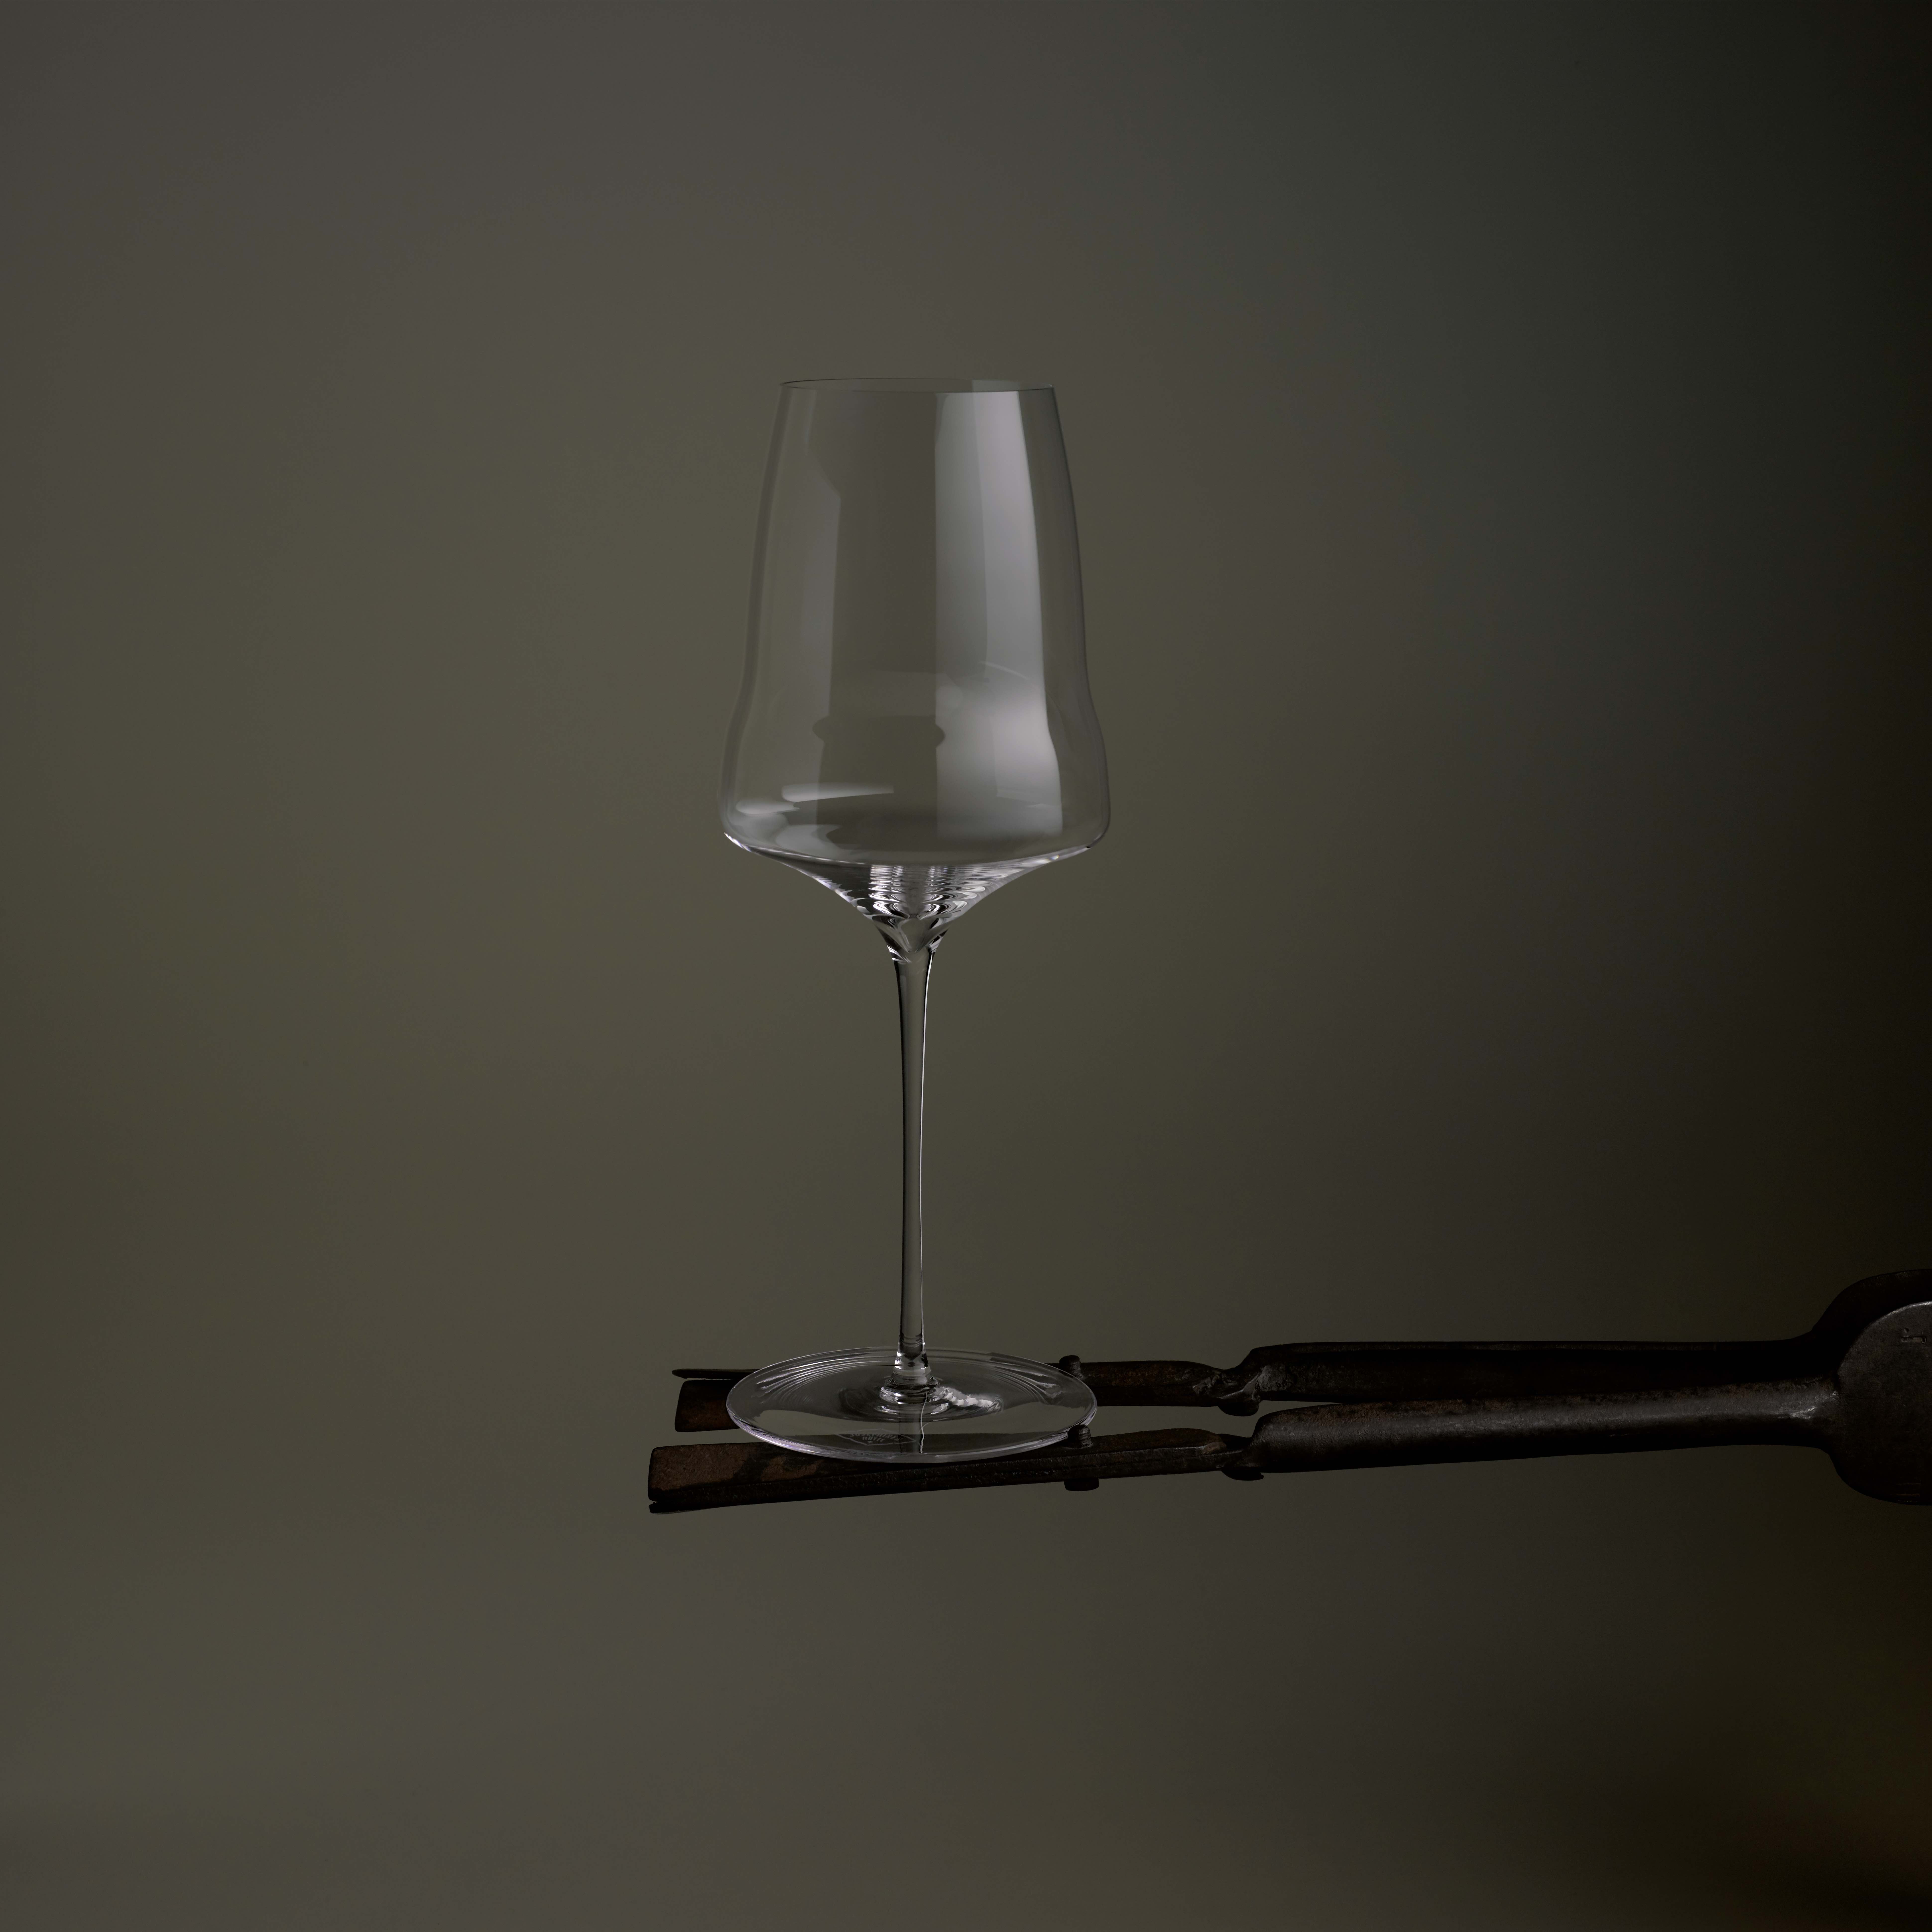 Weinglas zalto - Die TOP Auswahl unter allen analysierten Weinglas zalto!